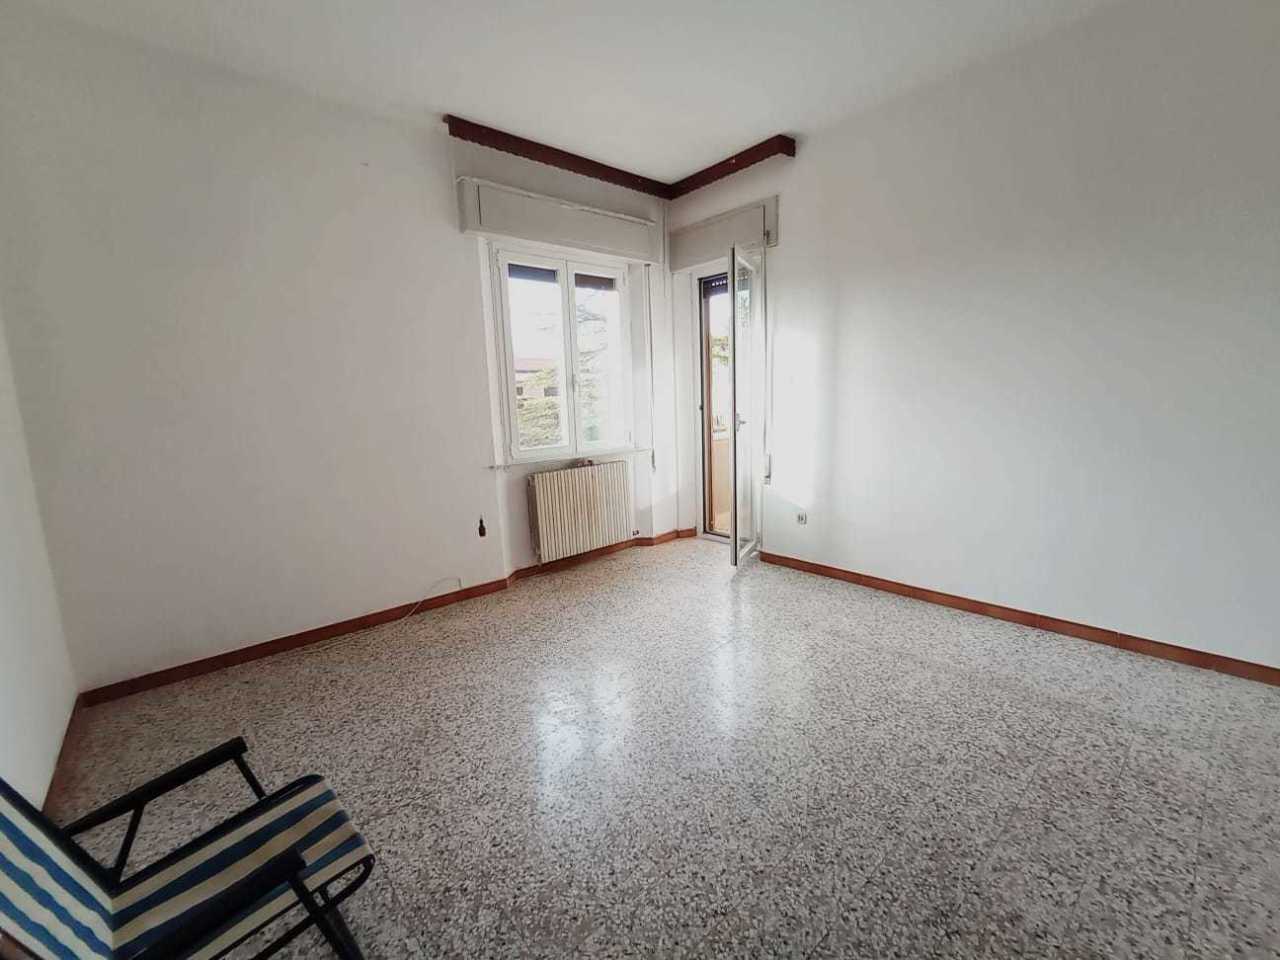 Appartamento in vendita a Morro d'Alba, 9999 locali, prezzo € 58.000 | PortaleAgenzieImmobiliari.it